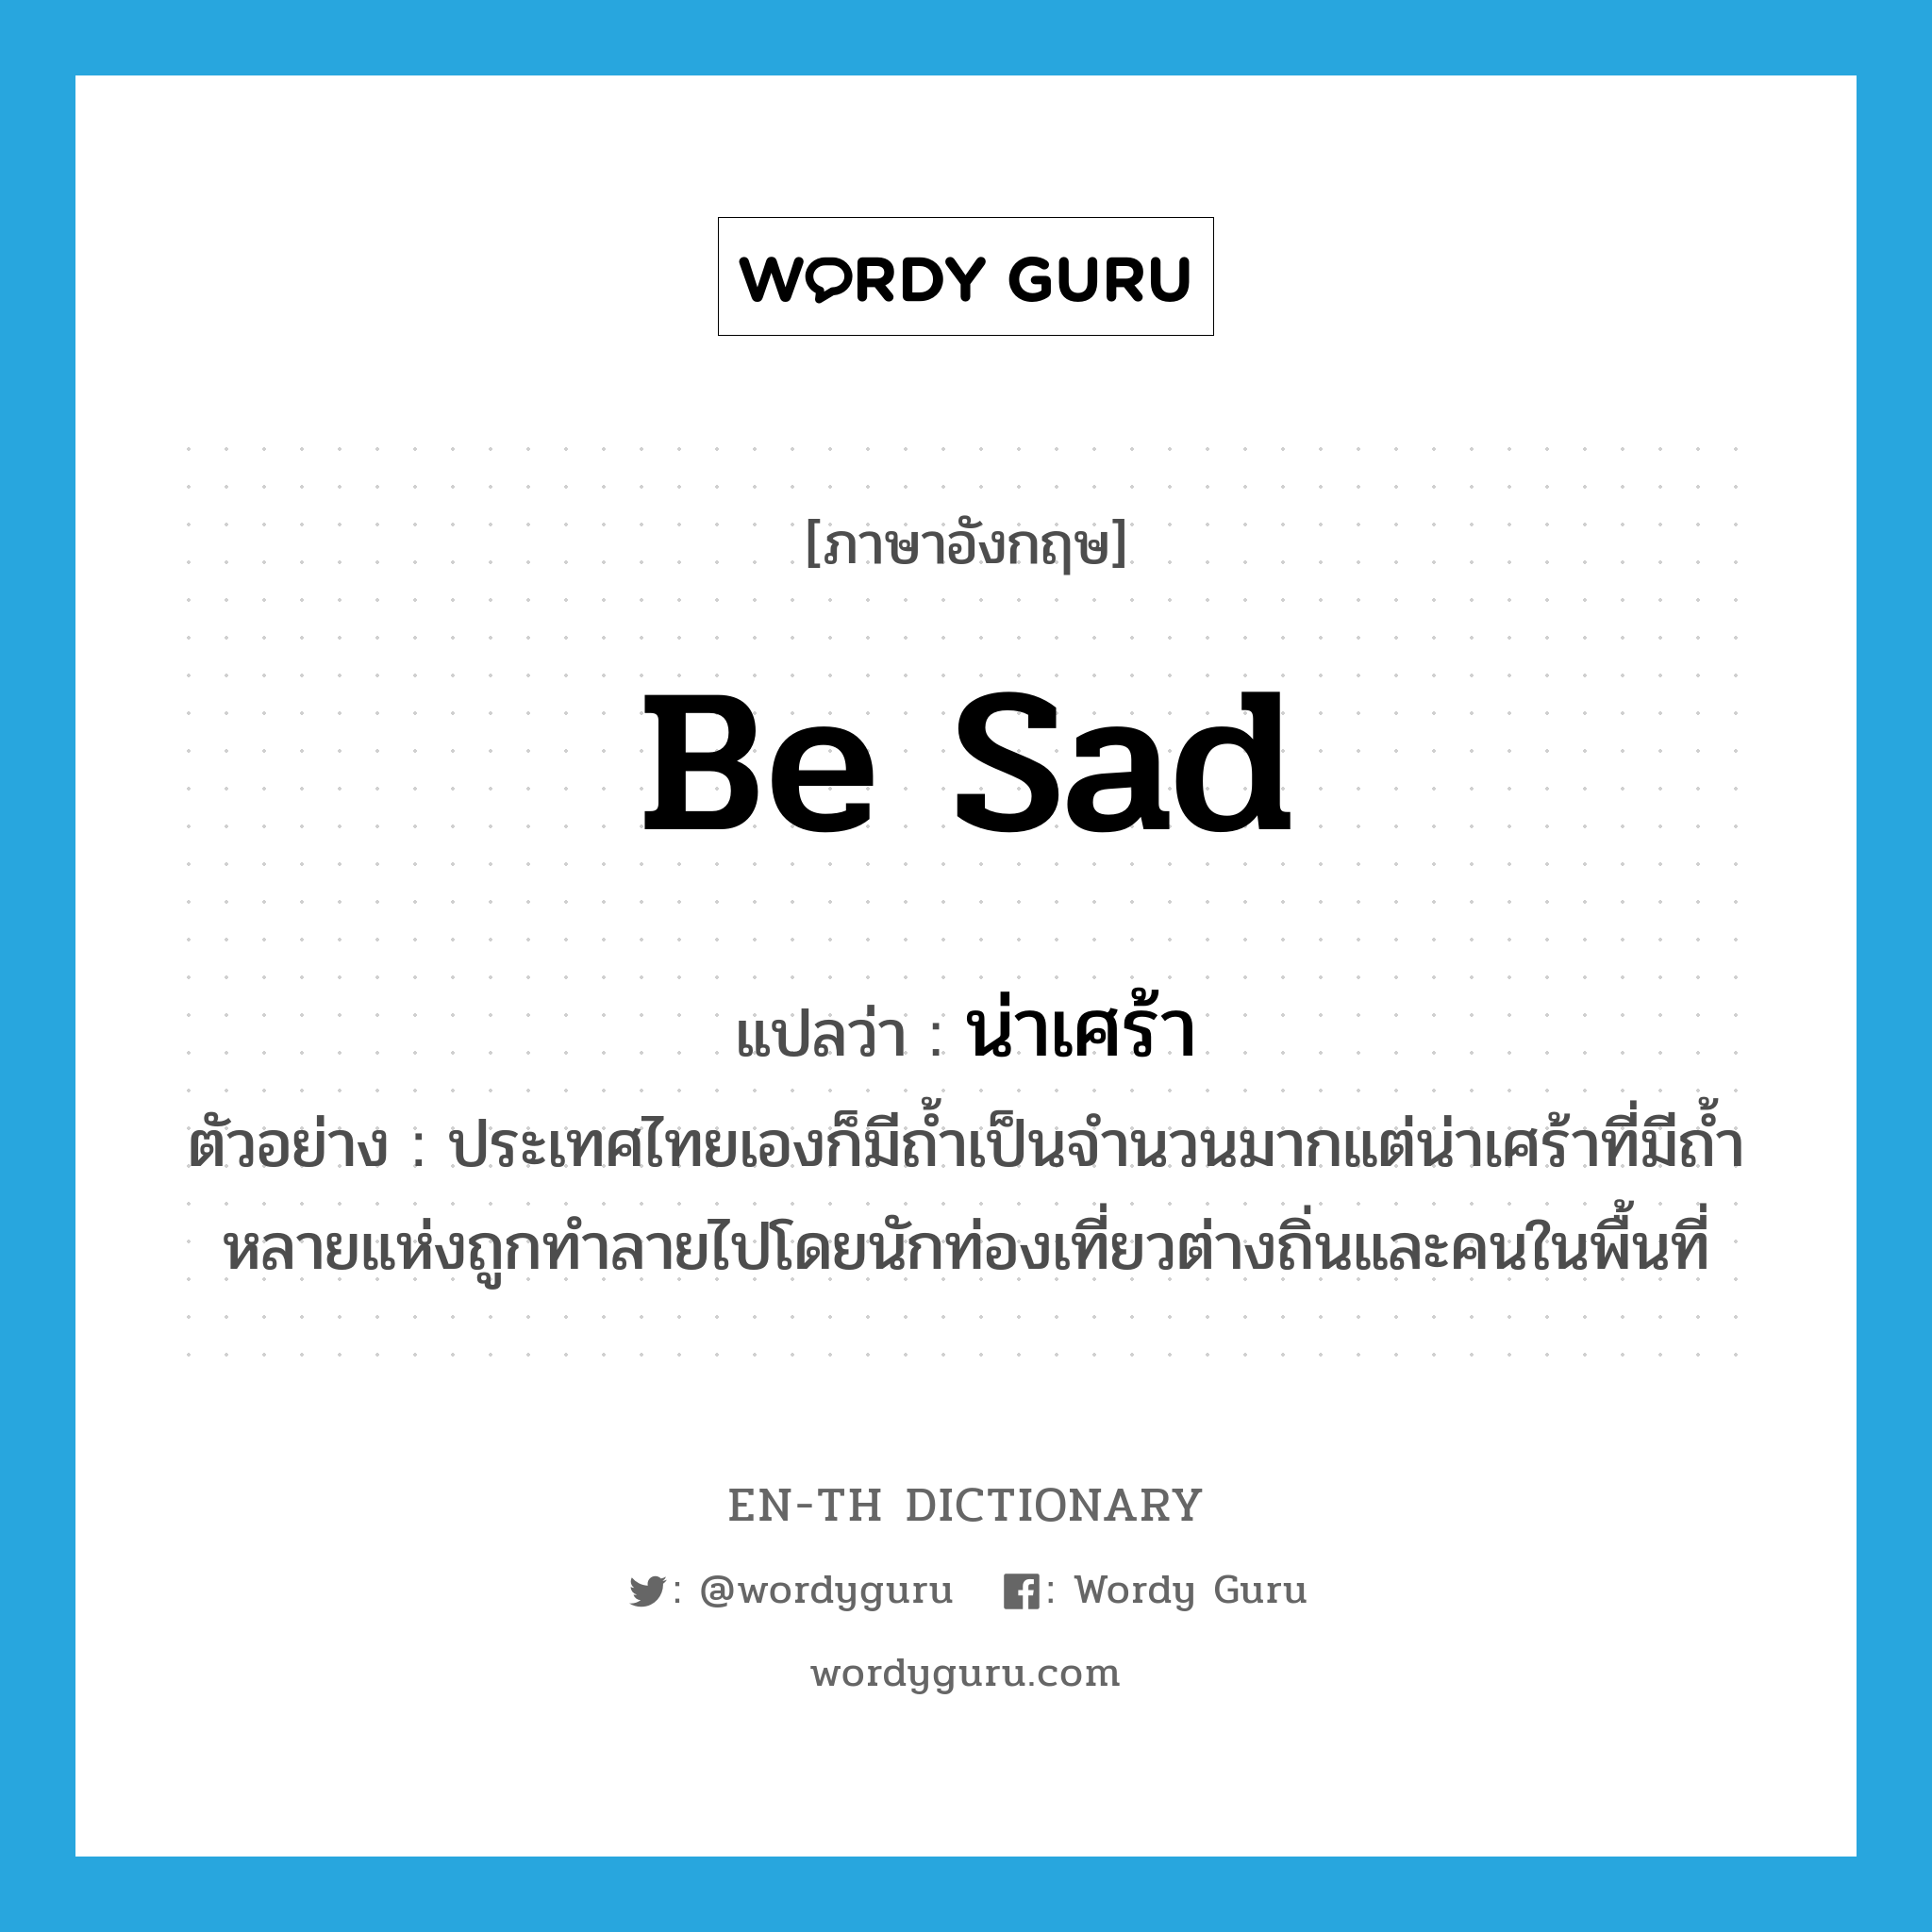 น่าเศร้า ภาษาอังกฤษ?, คำศัพท์ภาษาอังกฤษ น่าเศร้า แปลว่า be sad ประเภท V ตัวอย่าง ประเทศไทยเองก็มีถ้ำเป็นจำนวนมากแต่น่าเศร้าที่มีถ้ำหลายแห่งถูกทำลายไปโดยนักท่องเที่ยวต่างถิ่นและคนในพื้นที่ หมวด V